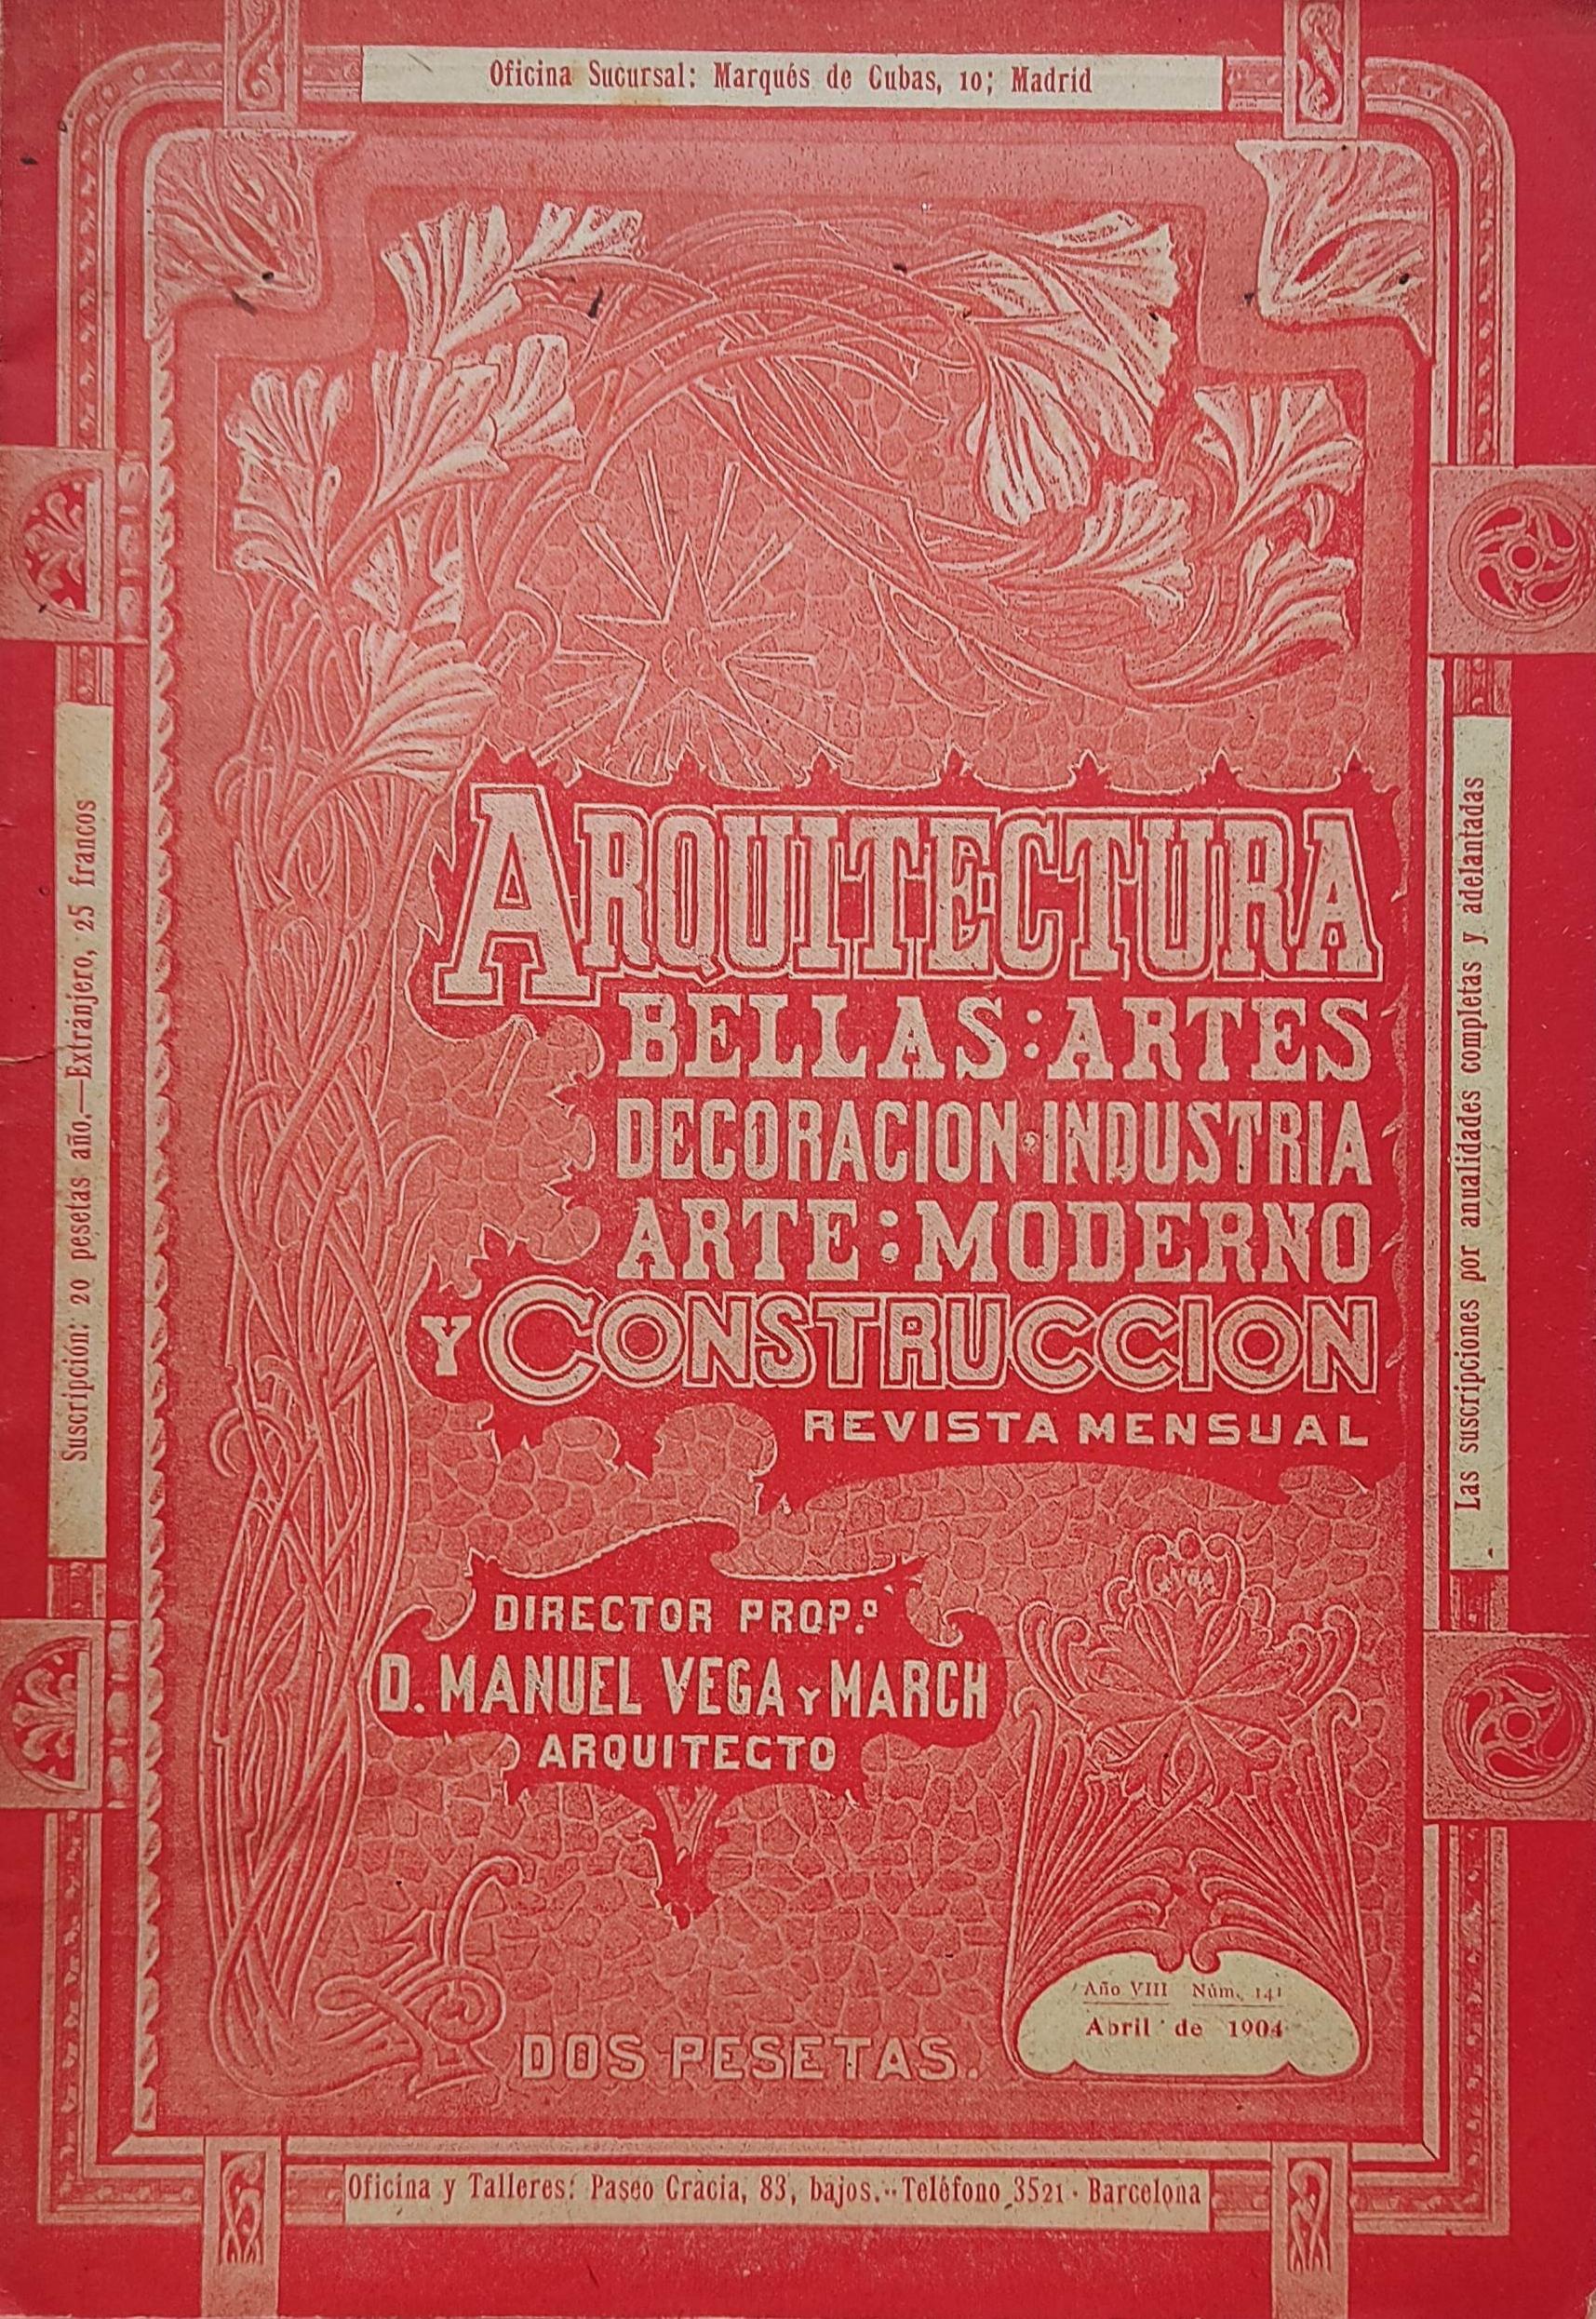  REVISTA MENSUAL DE ABRIL 1904 DE ARQUITECTURA, BELLAS ARTES